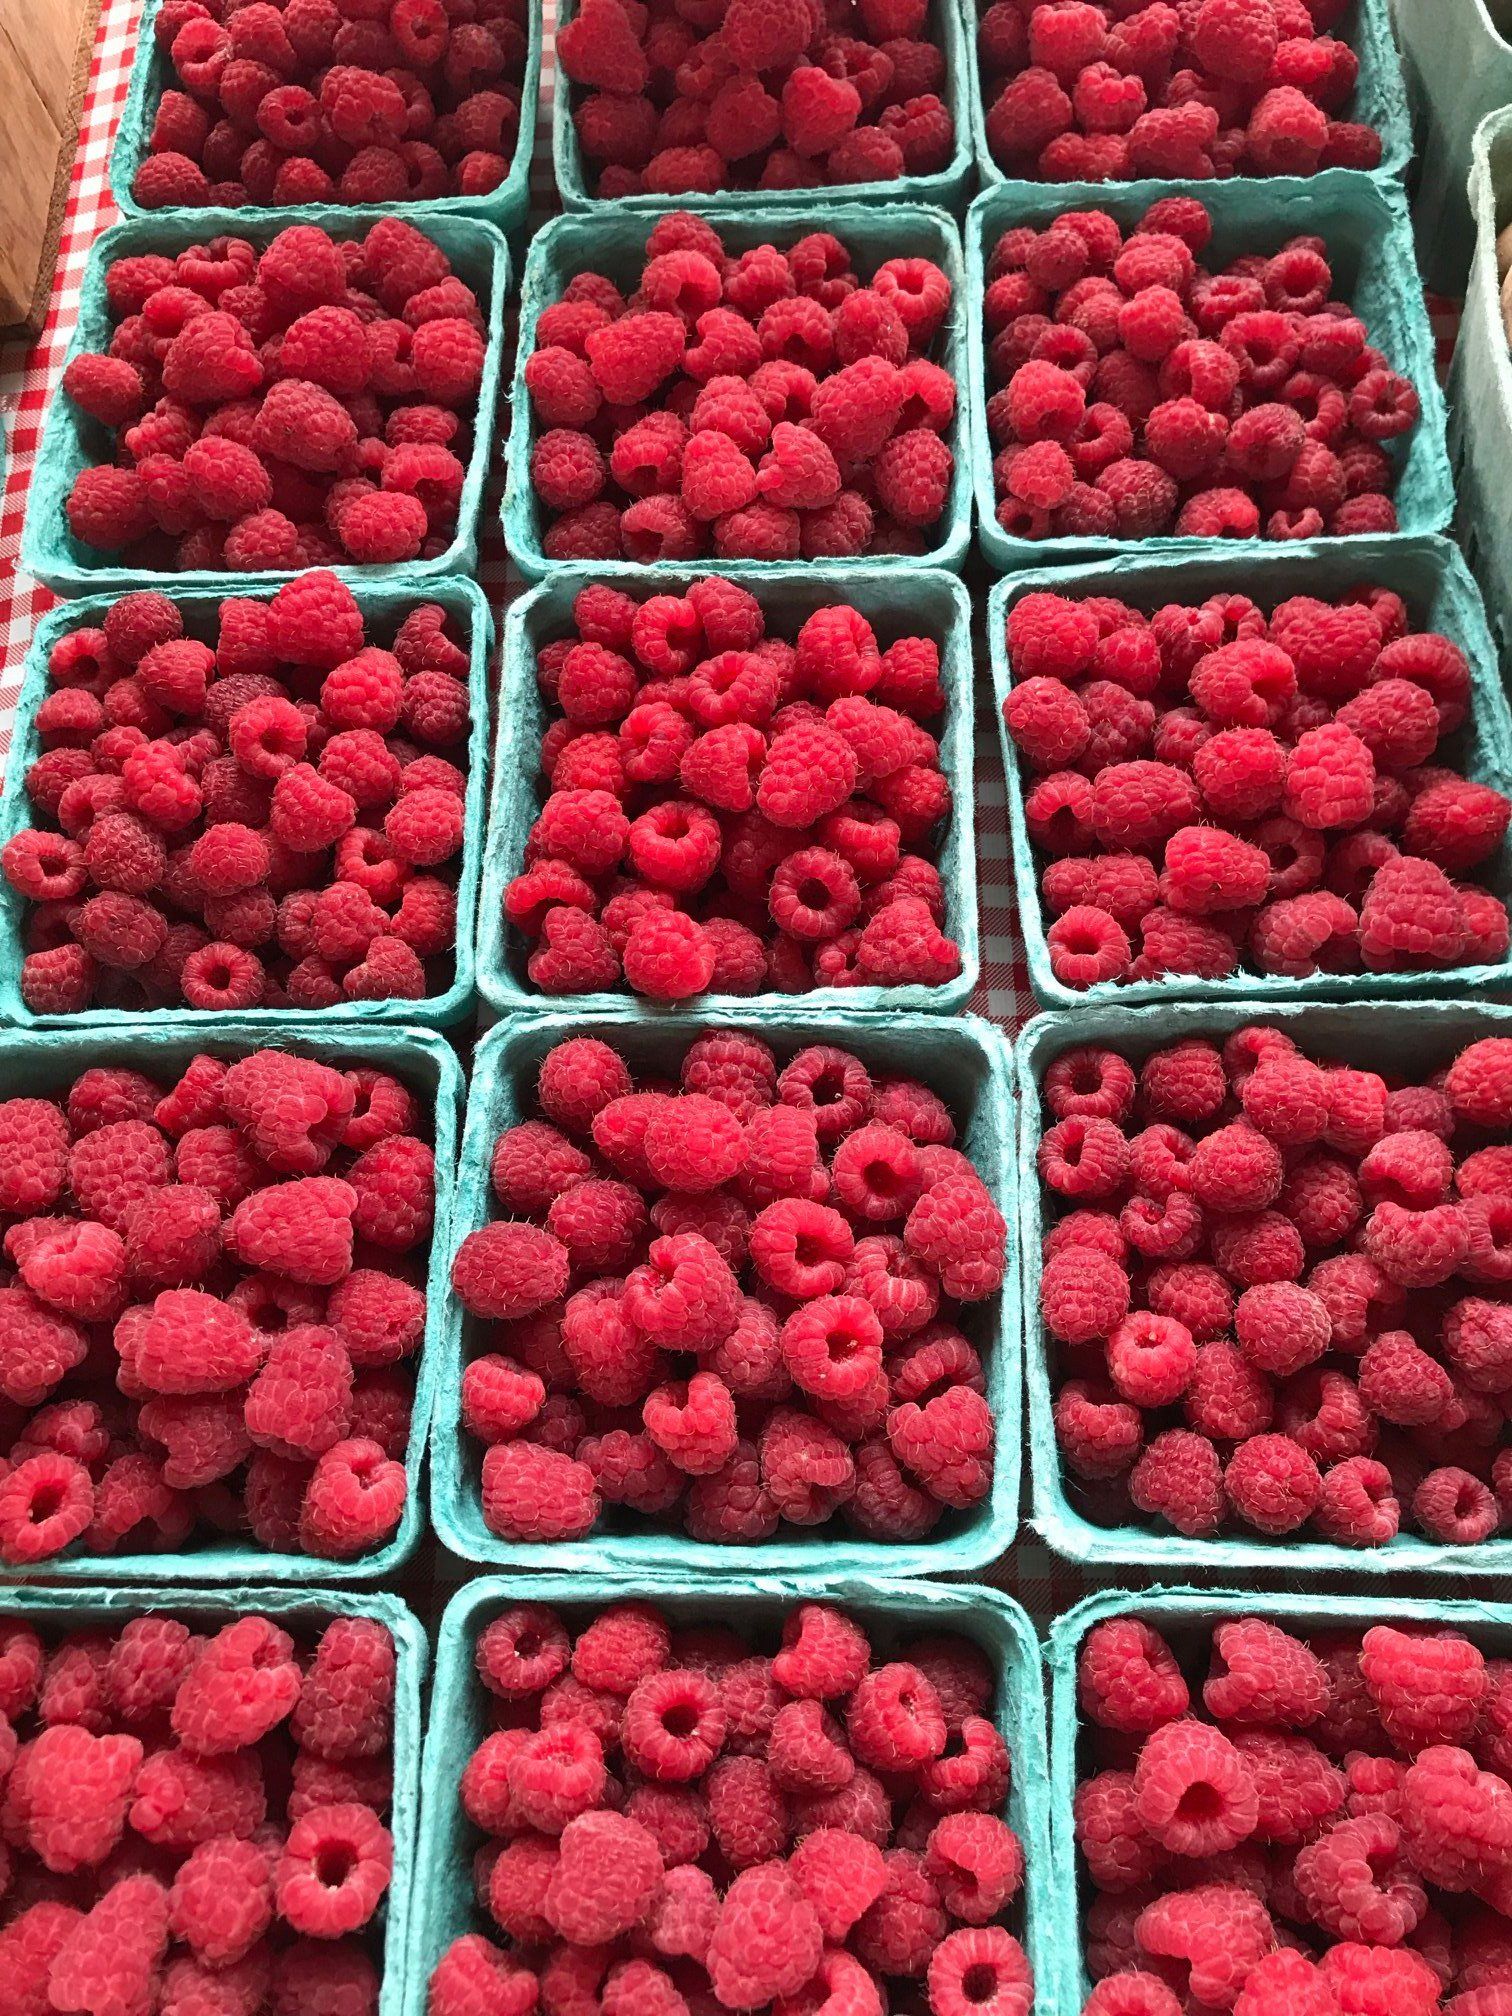 Raspberries Are Back!